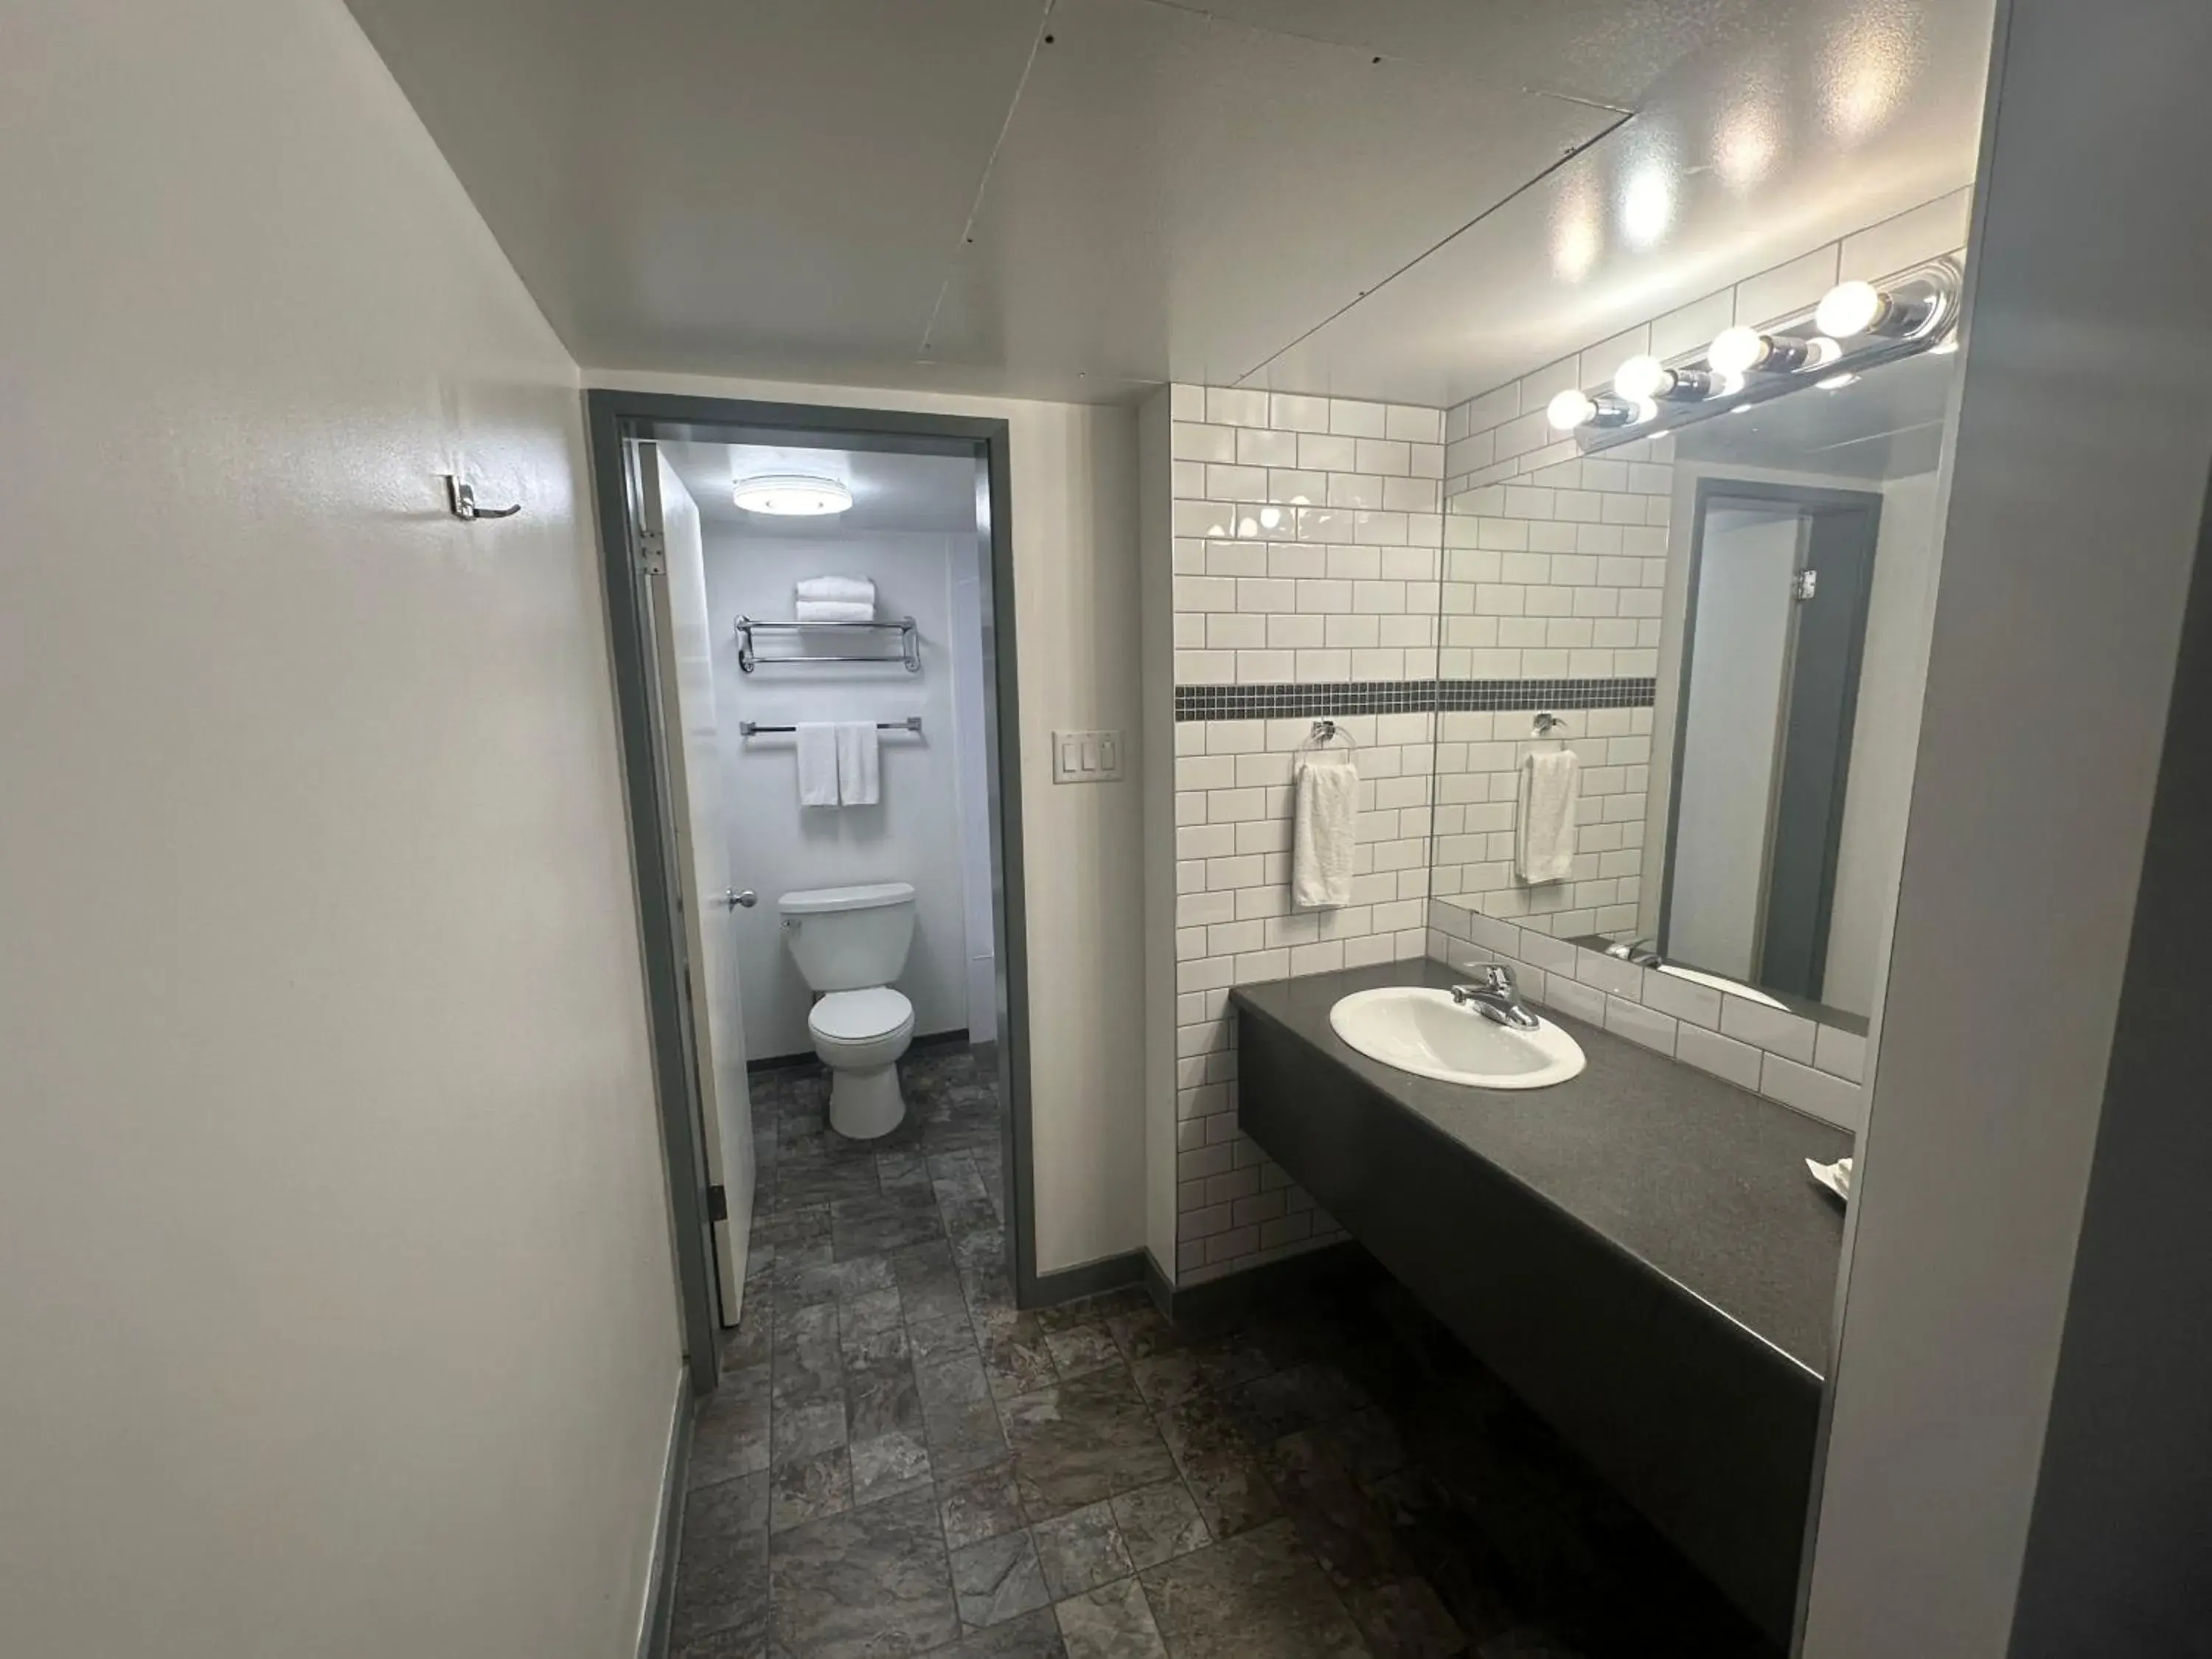 Bathroom in DIVYA SUTRA Riviera Plaza and Conference Centre, Vernon, BC